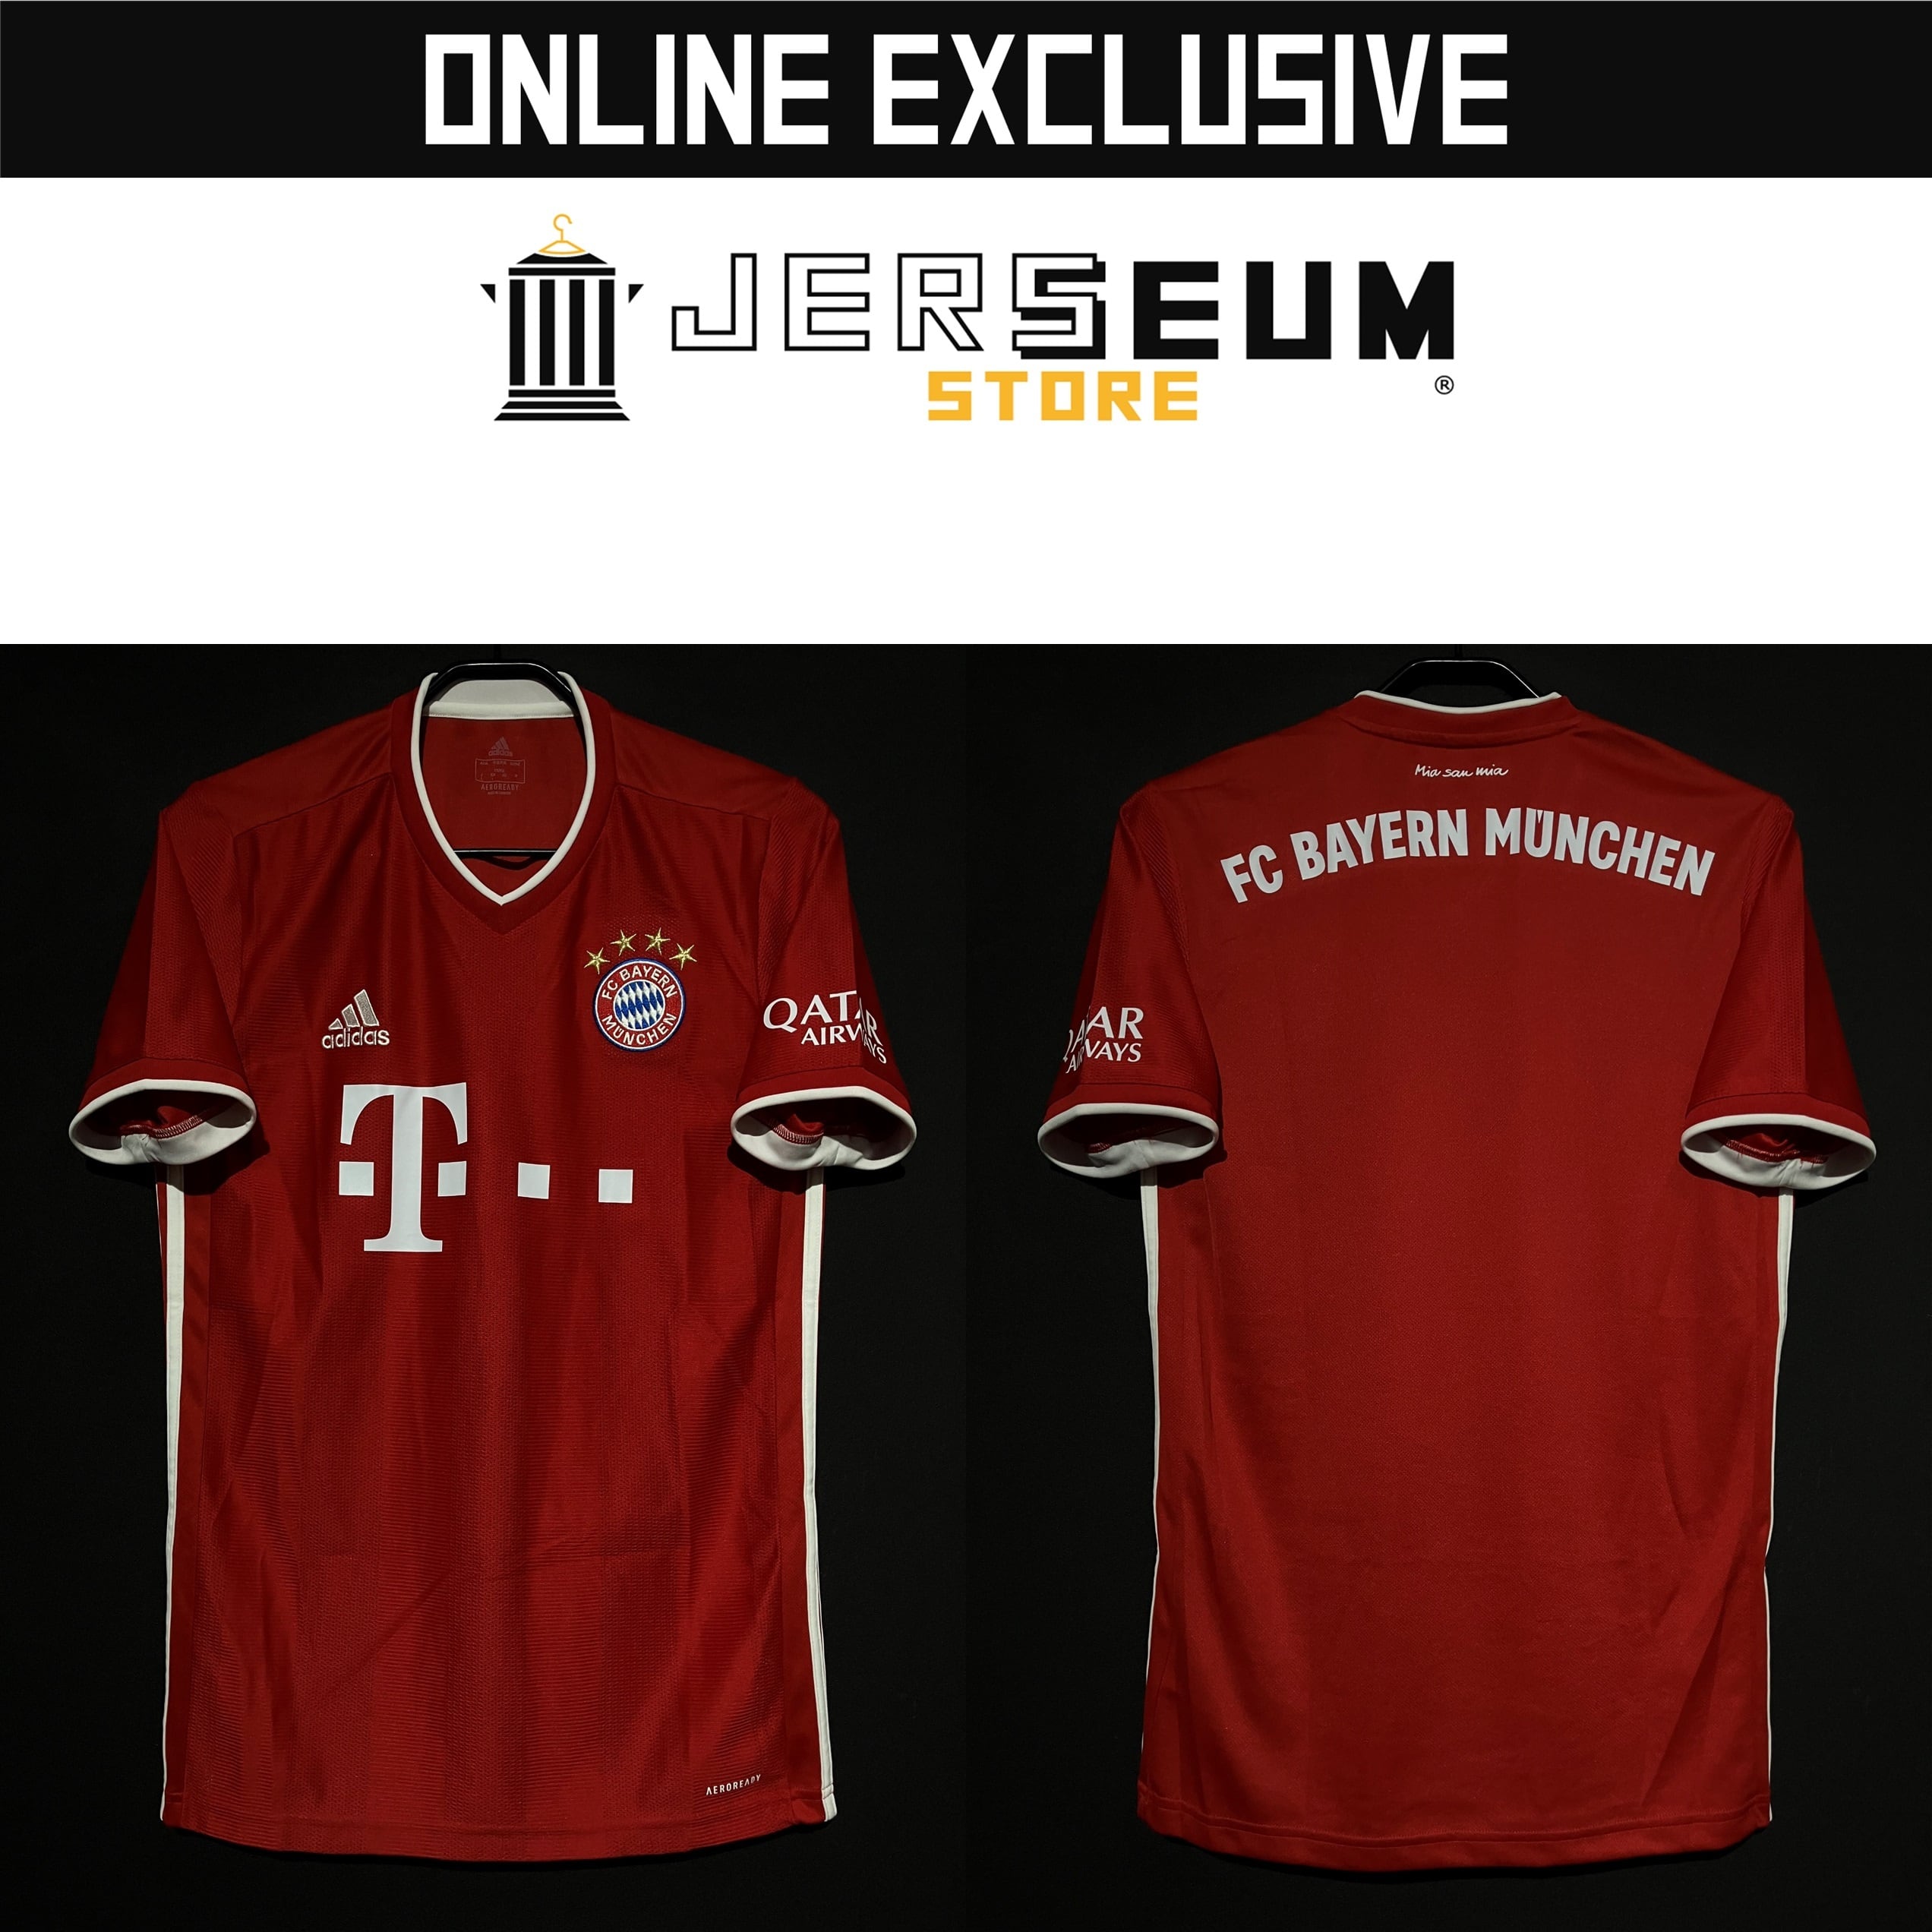 FC Bayern Munich：バイエルン・ミュンヘン | Jerseum Store